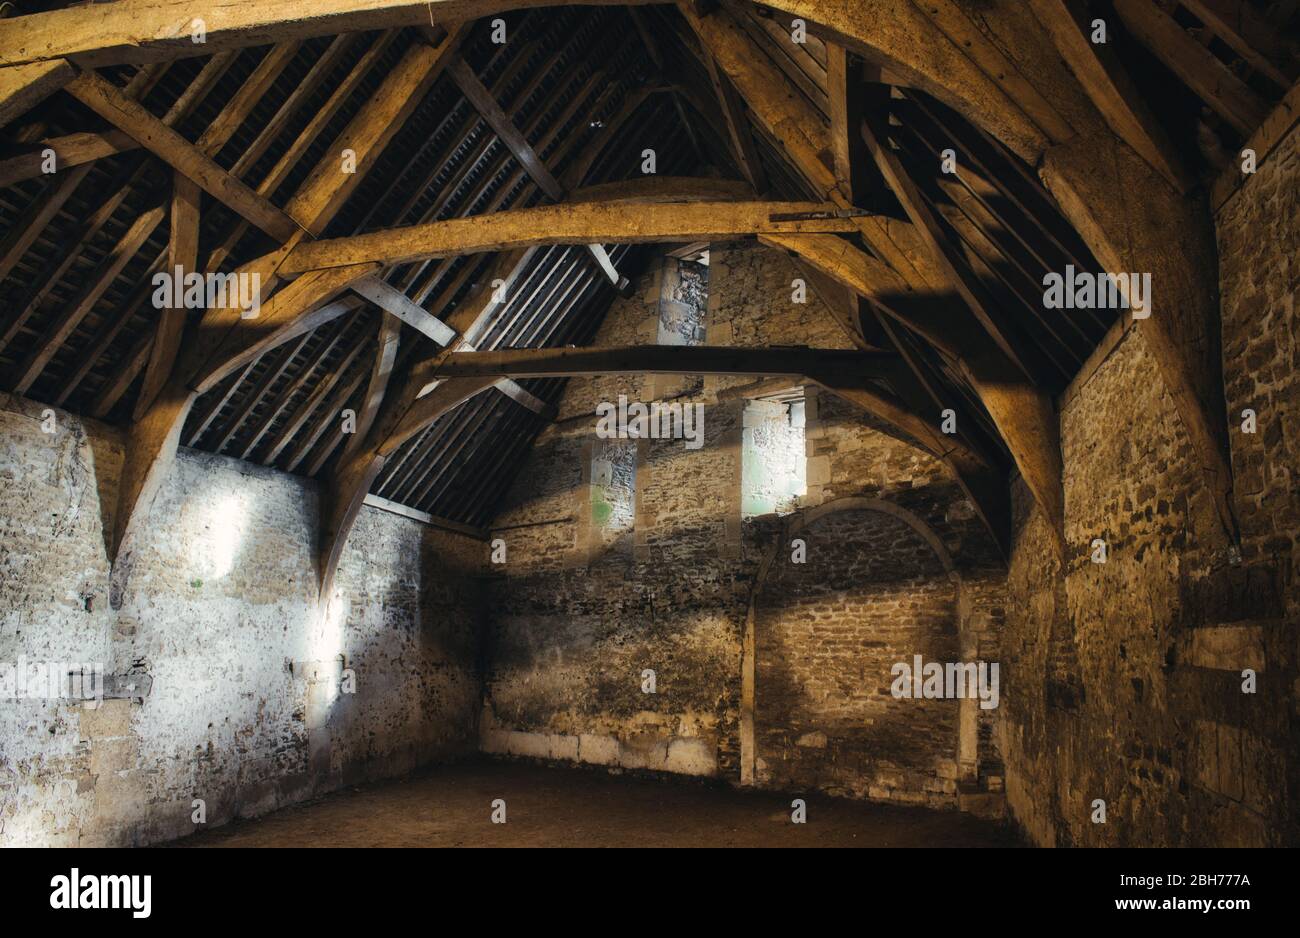 Interieur einer alten mittelalterlichen Scheune in einem typischen Dorf in England Stockfoto